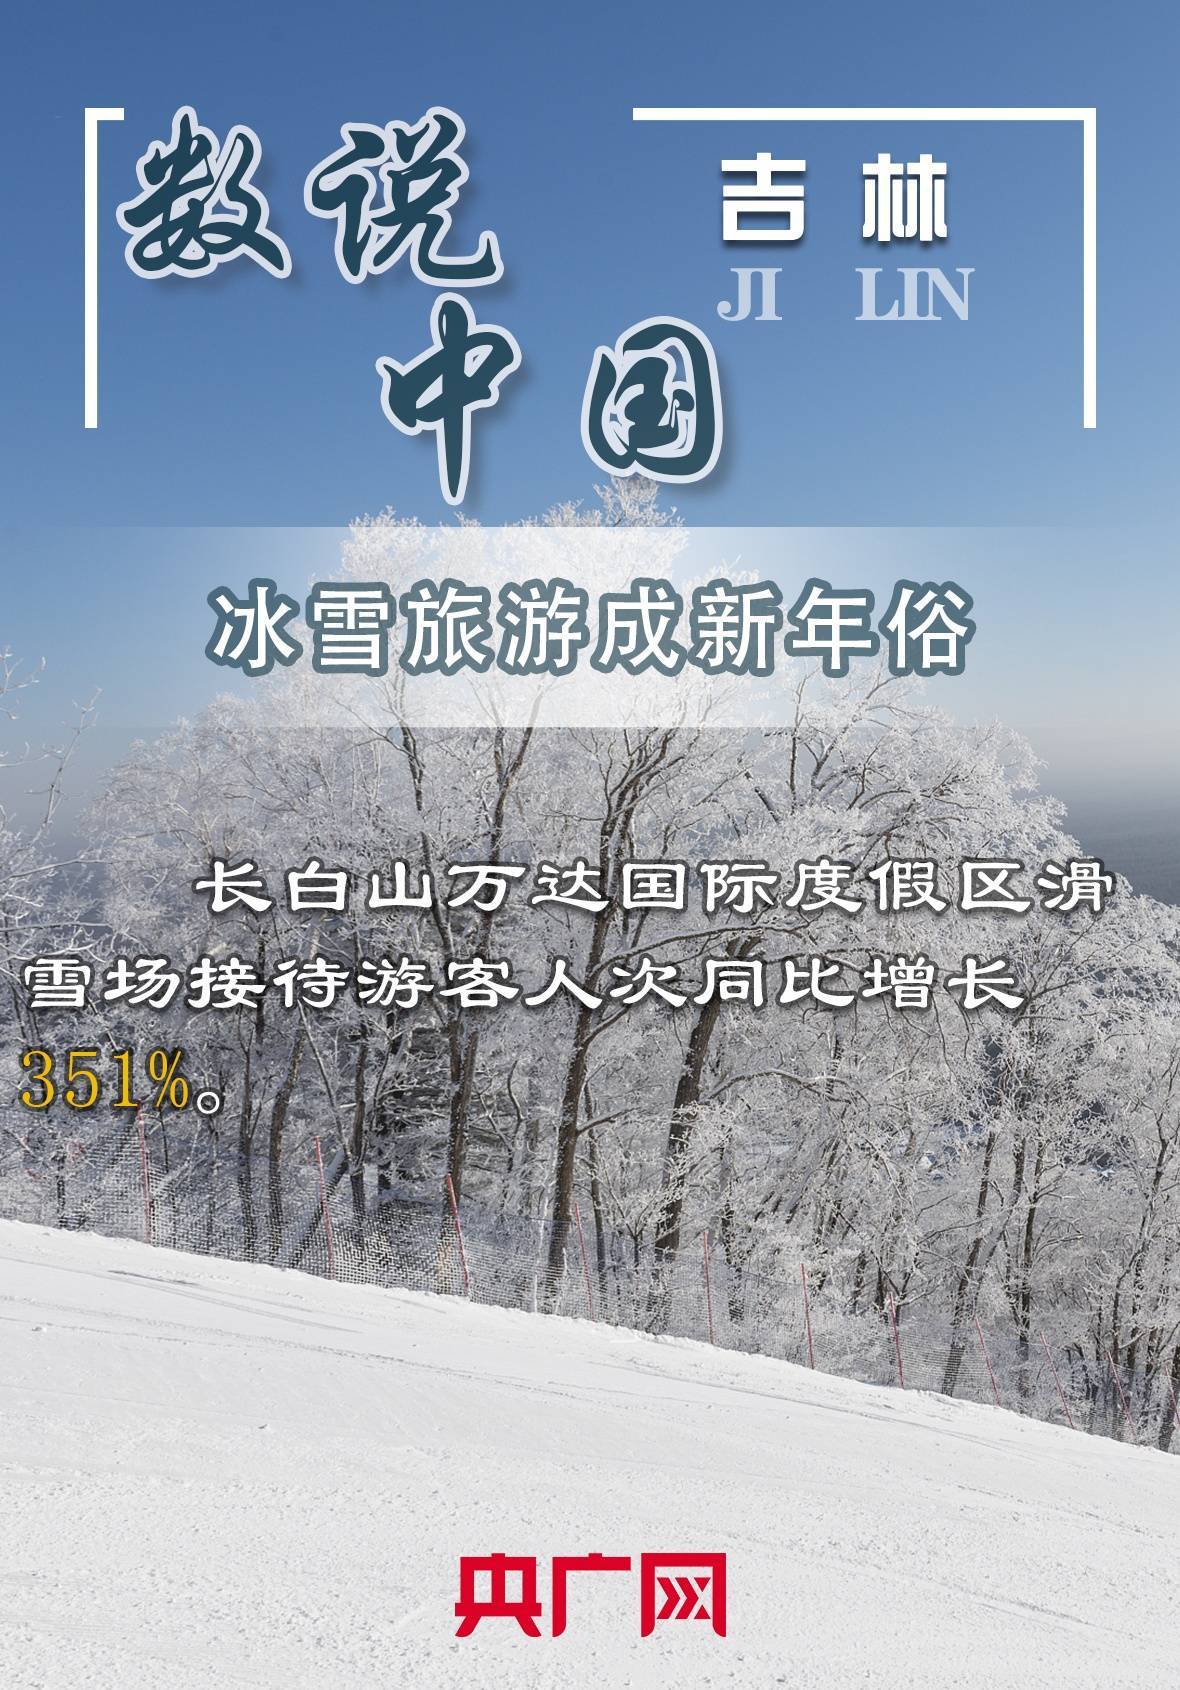 杨海|【数说中国·吉林】”冬奥+新春“成春节旅游热门